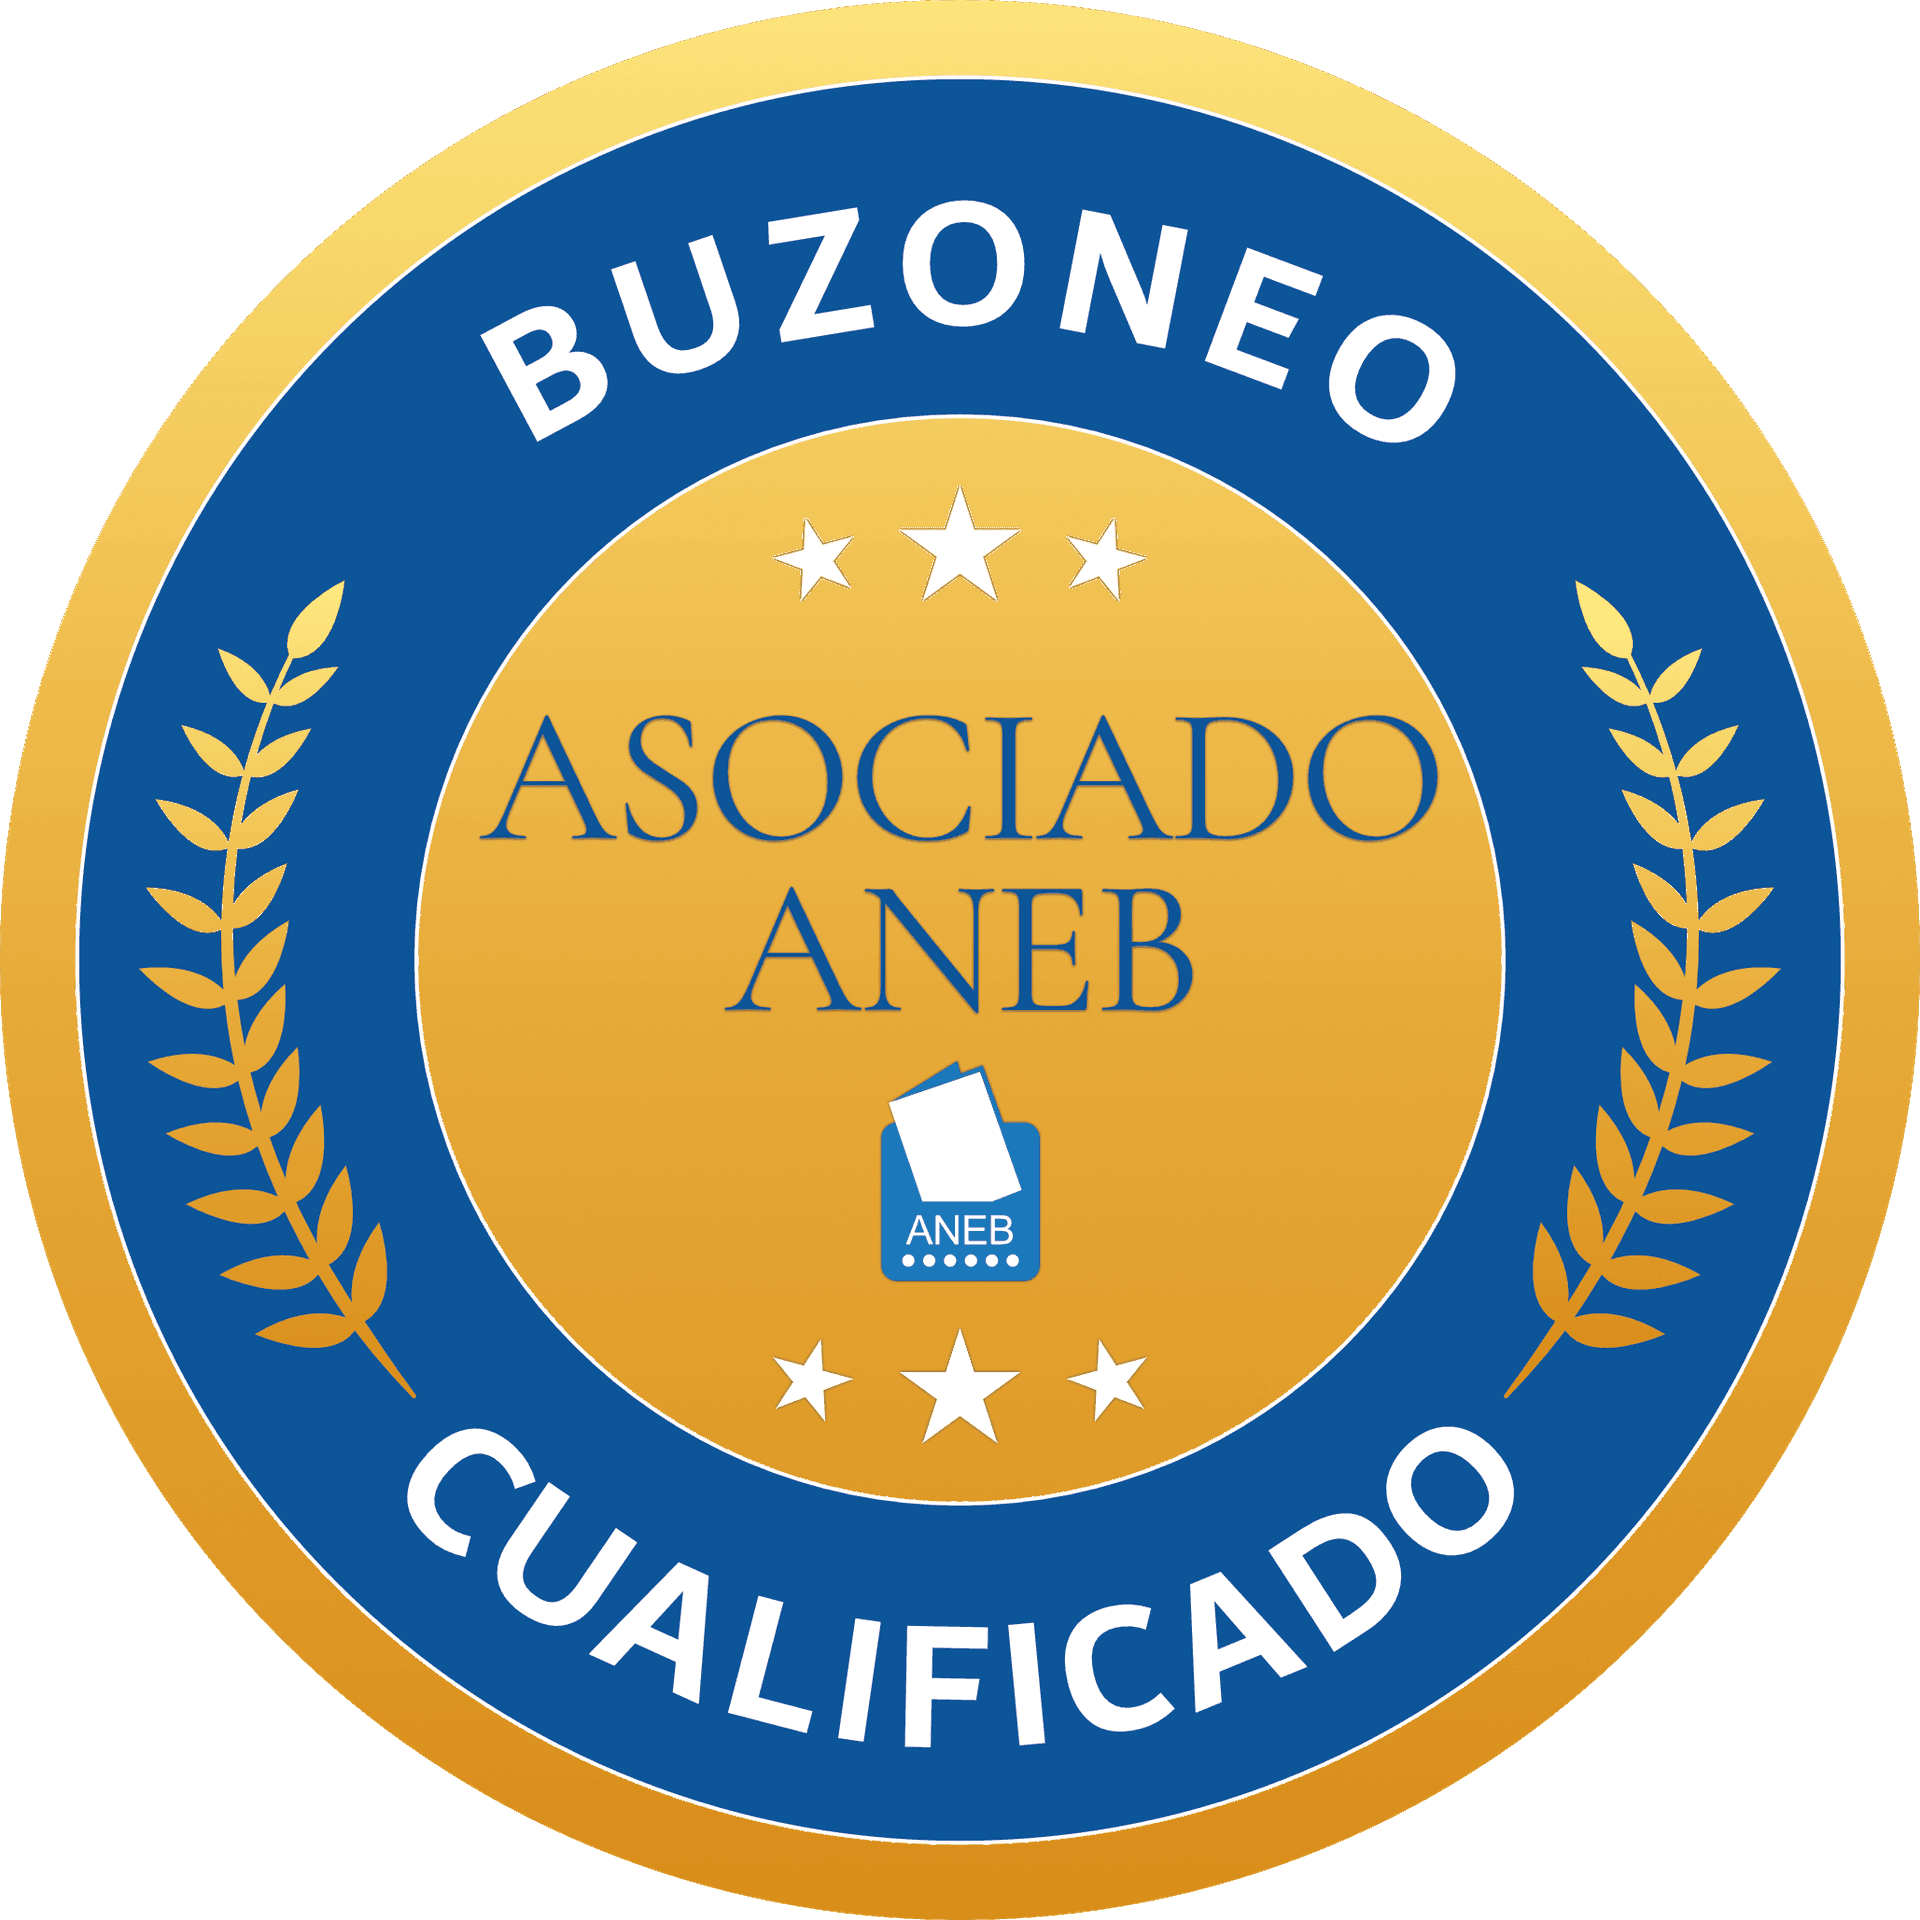 Buzón Rioja, Asociado ANEB